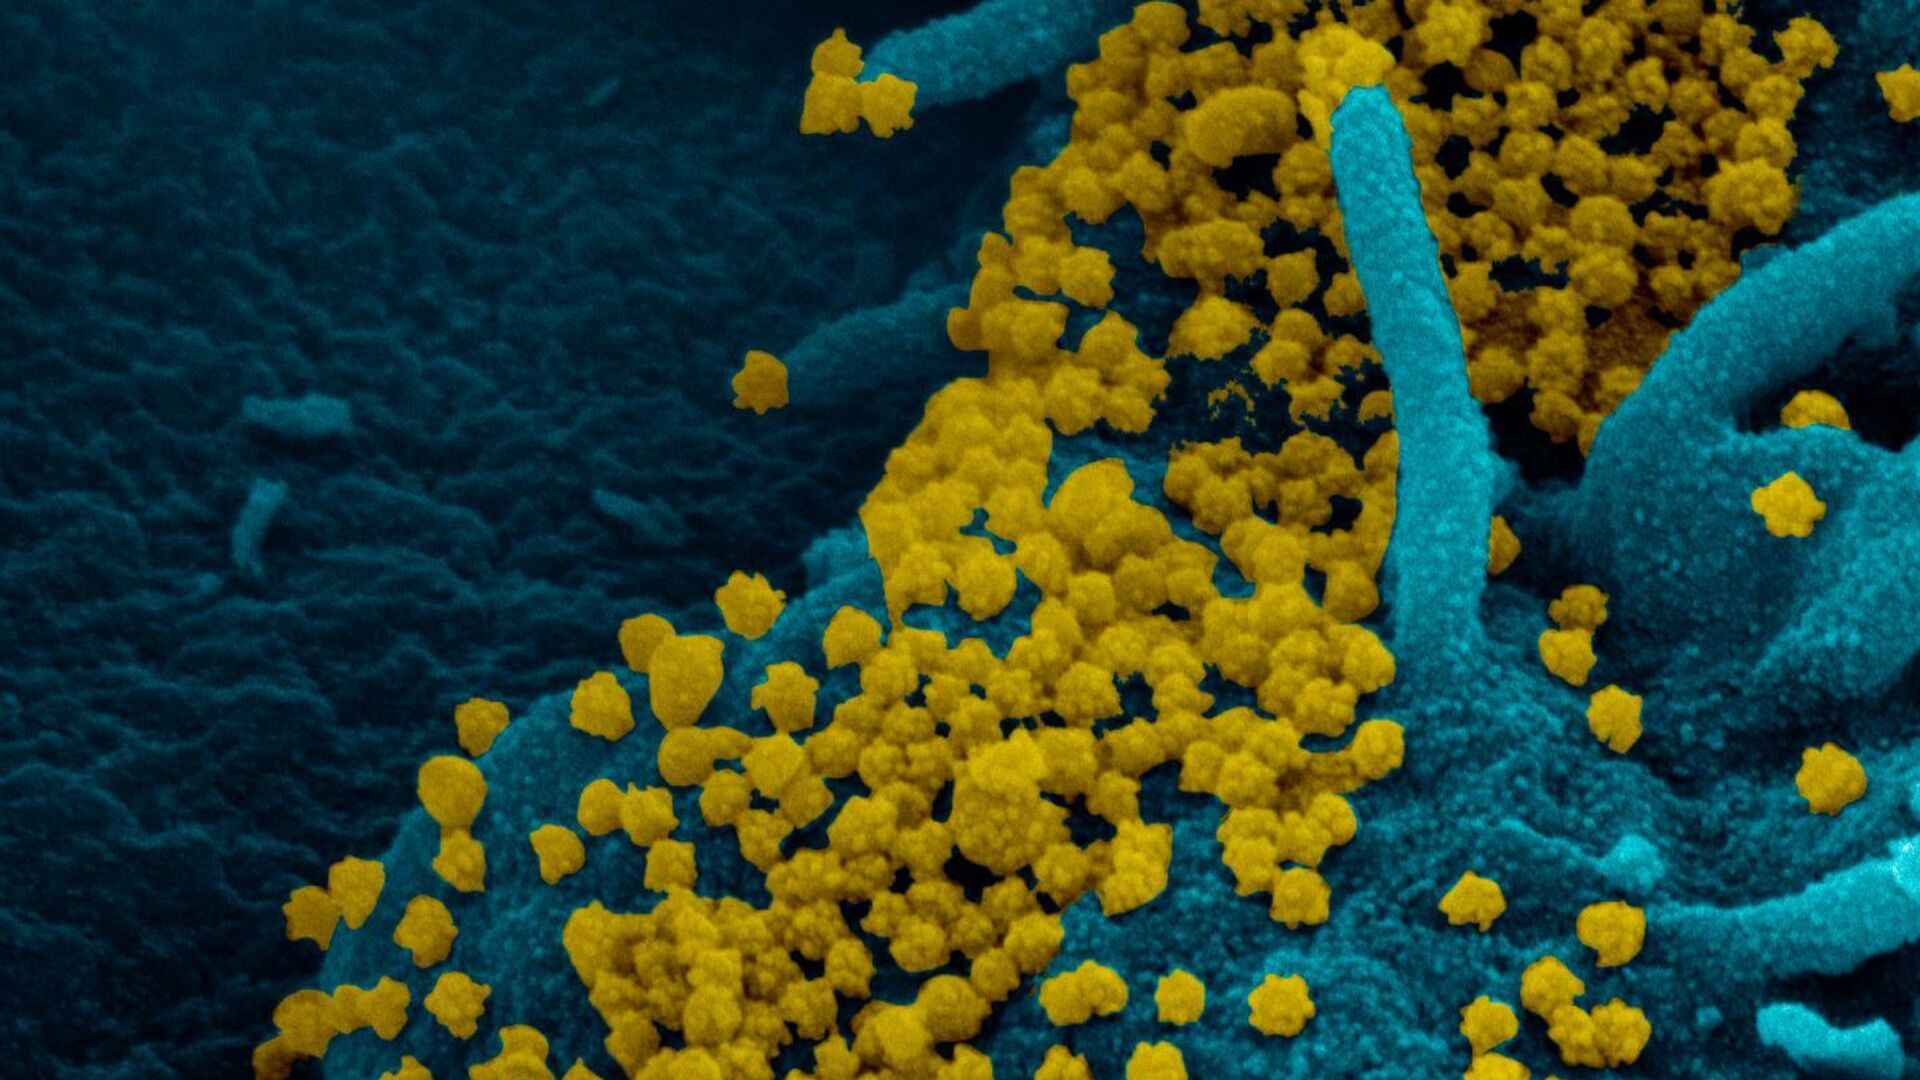 Изображение SARS-CoV-2, полученное с помощью сканирующей электронной микроскопии мазка из носоглотки пациентки с ослабленным иммунитетом - РИА Новости, 1920, 26.11.2020